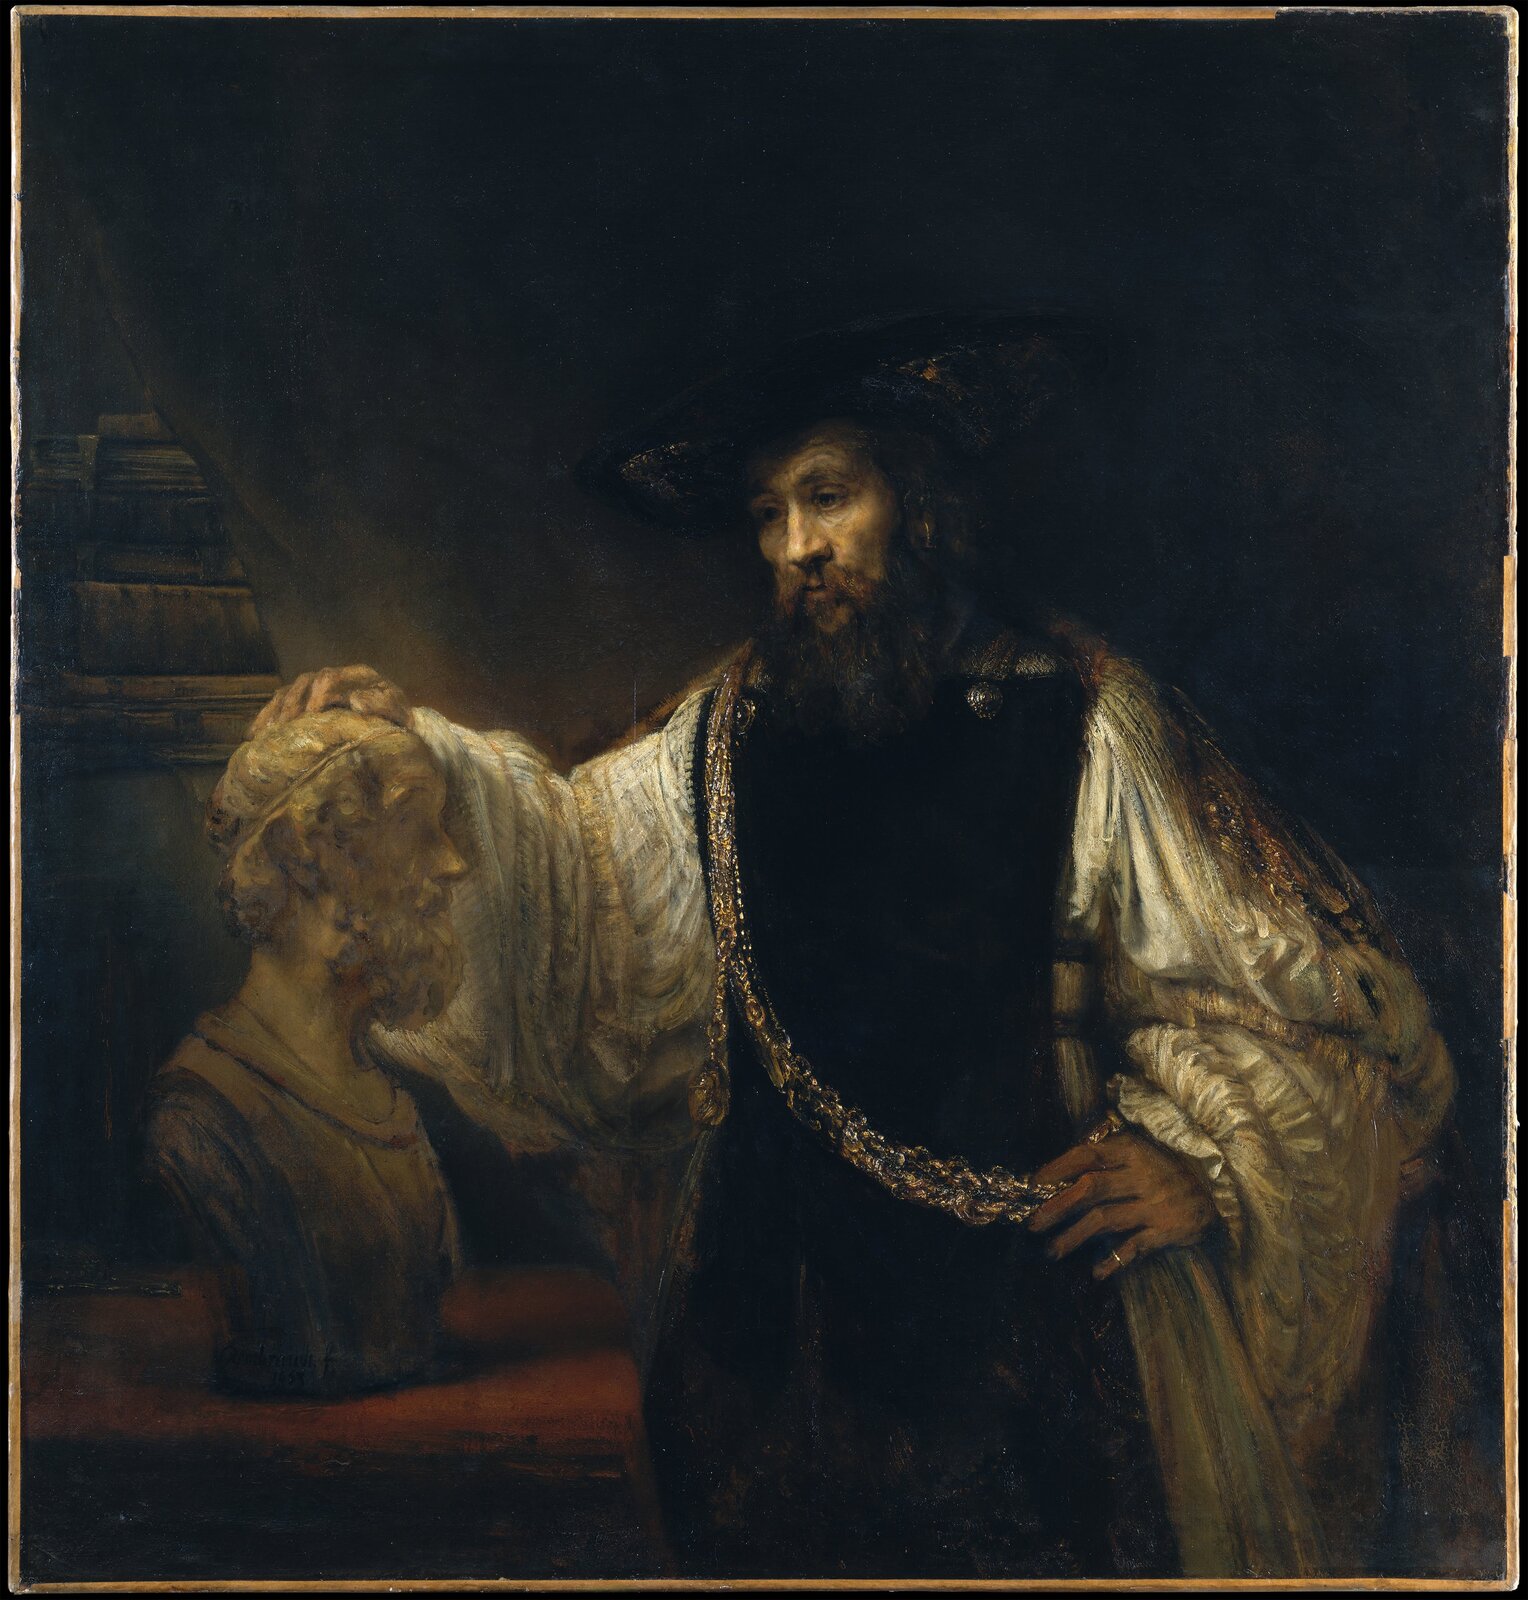 Obraz przedstawia starszego, brodatego mężczyznę stojącego obok marmurowego popiersia Homera. Mężczyzna trzyma prawą dłoń na głowie poety. Jest ubrany w obszerną szatę, przez ramię ma przewieszony ozdobny łańcuch. Mężczyzna jest zamyślony.